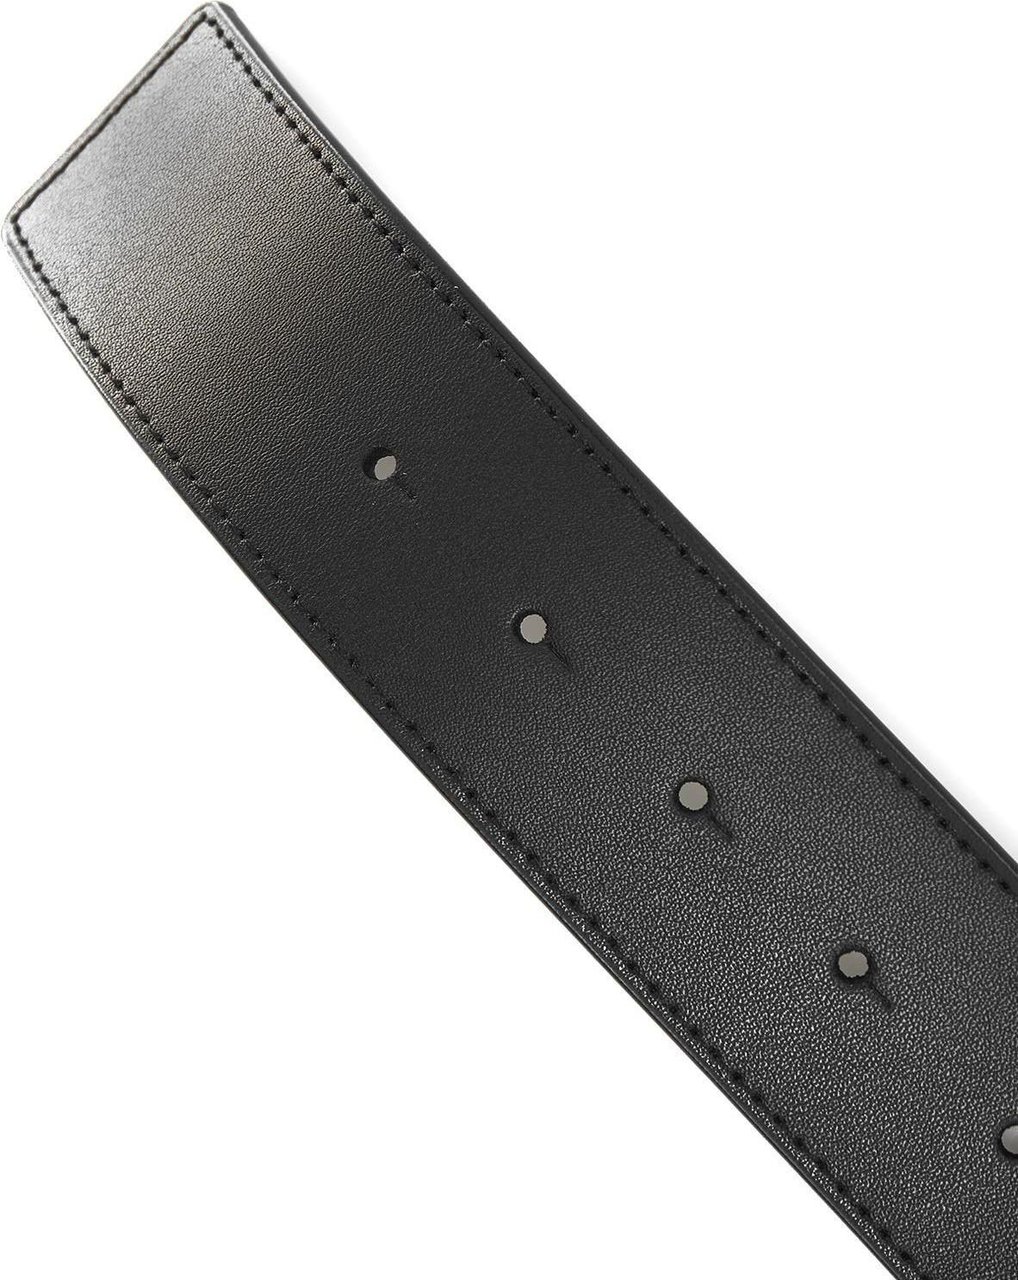 Pinko Belts Black Zwart